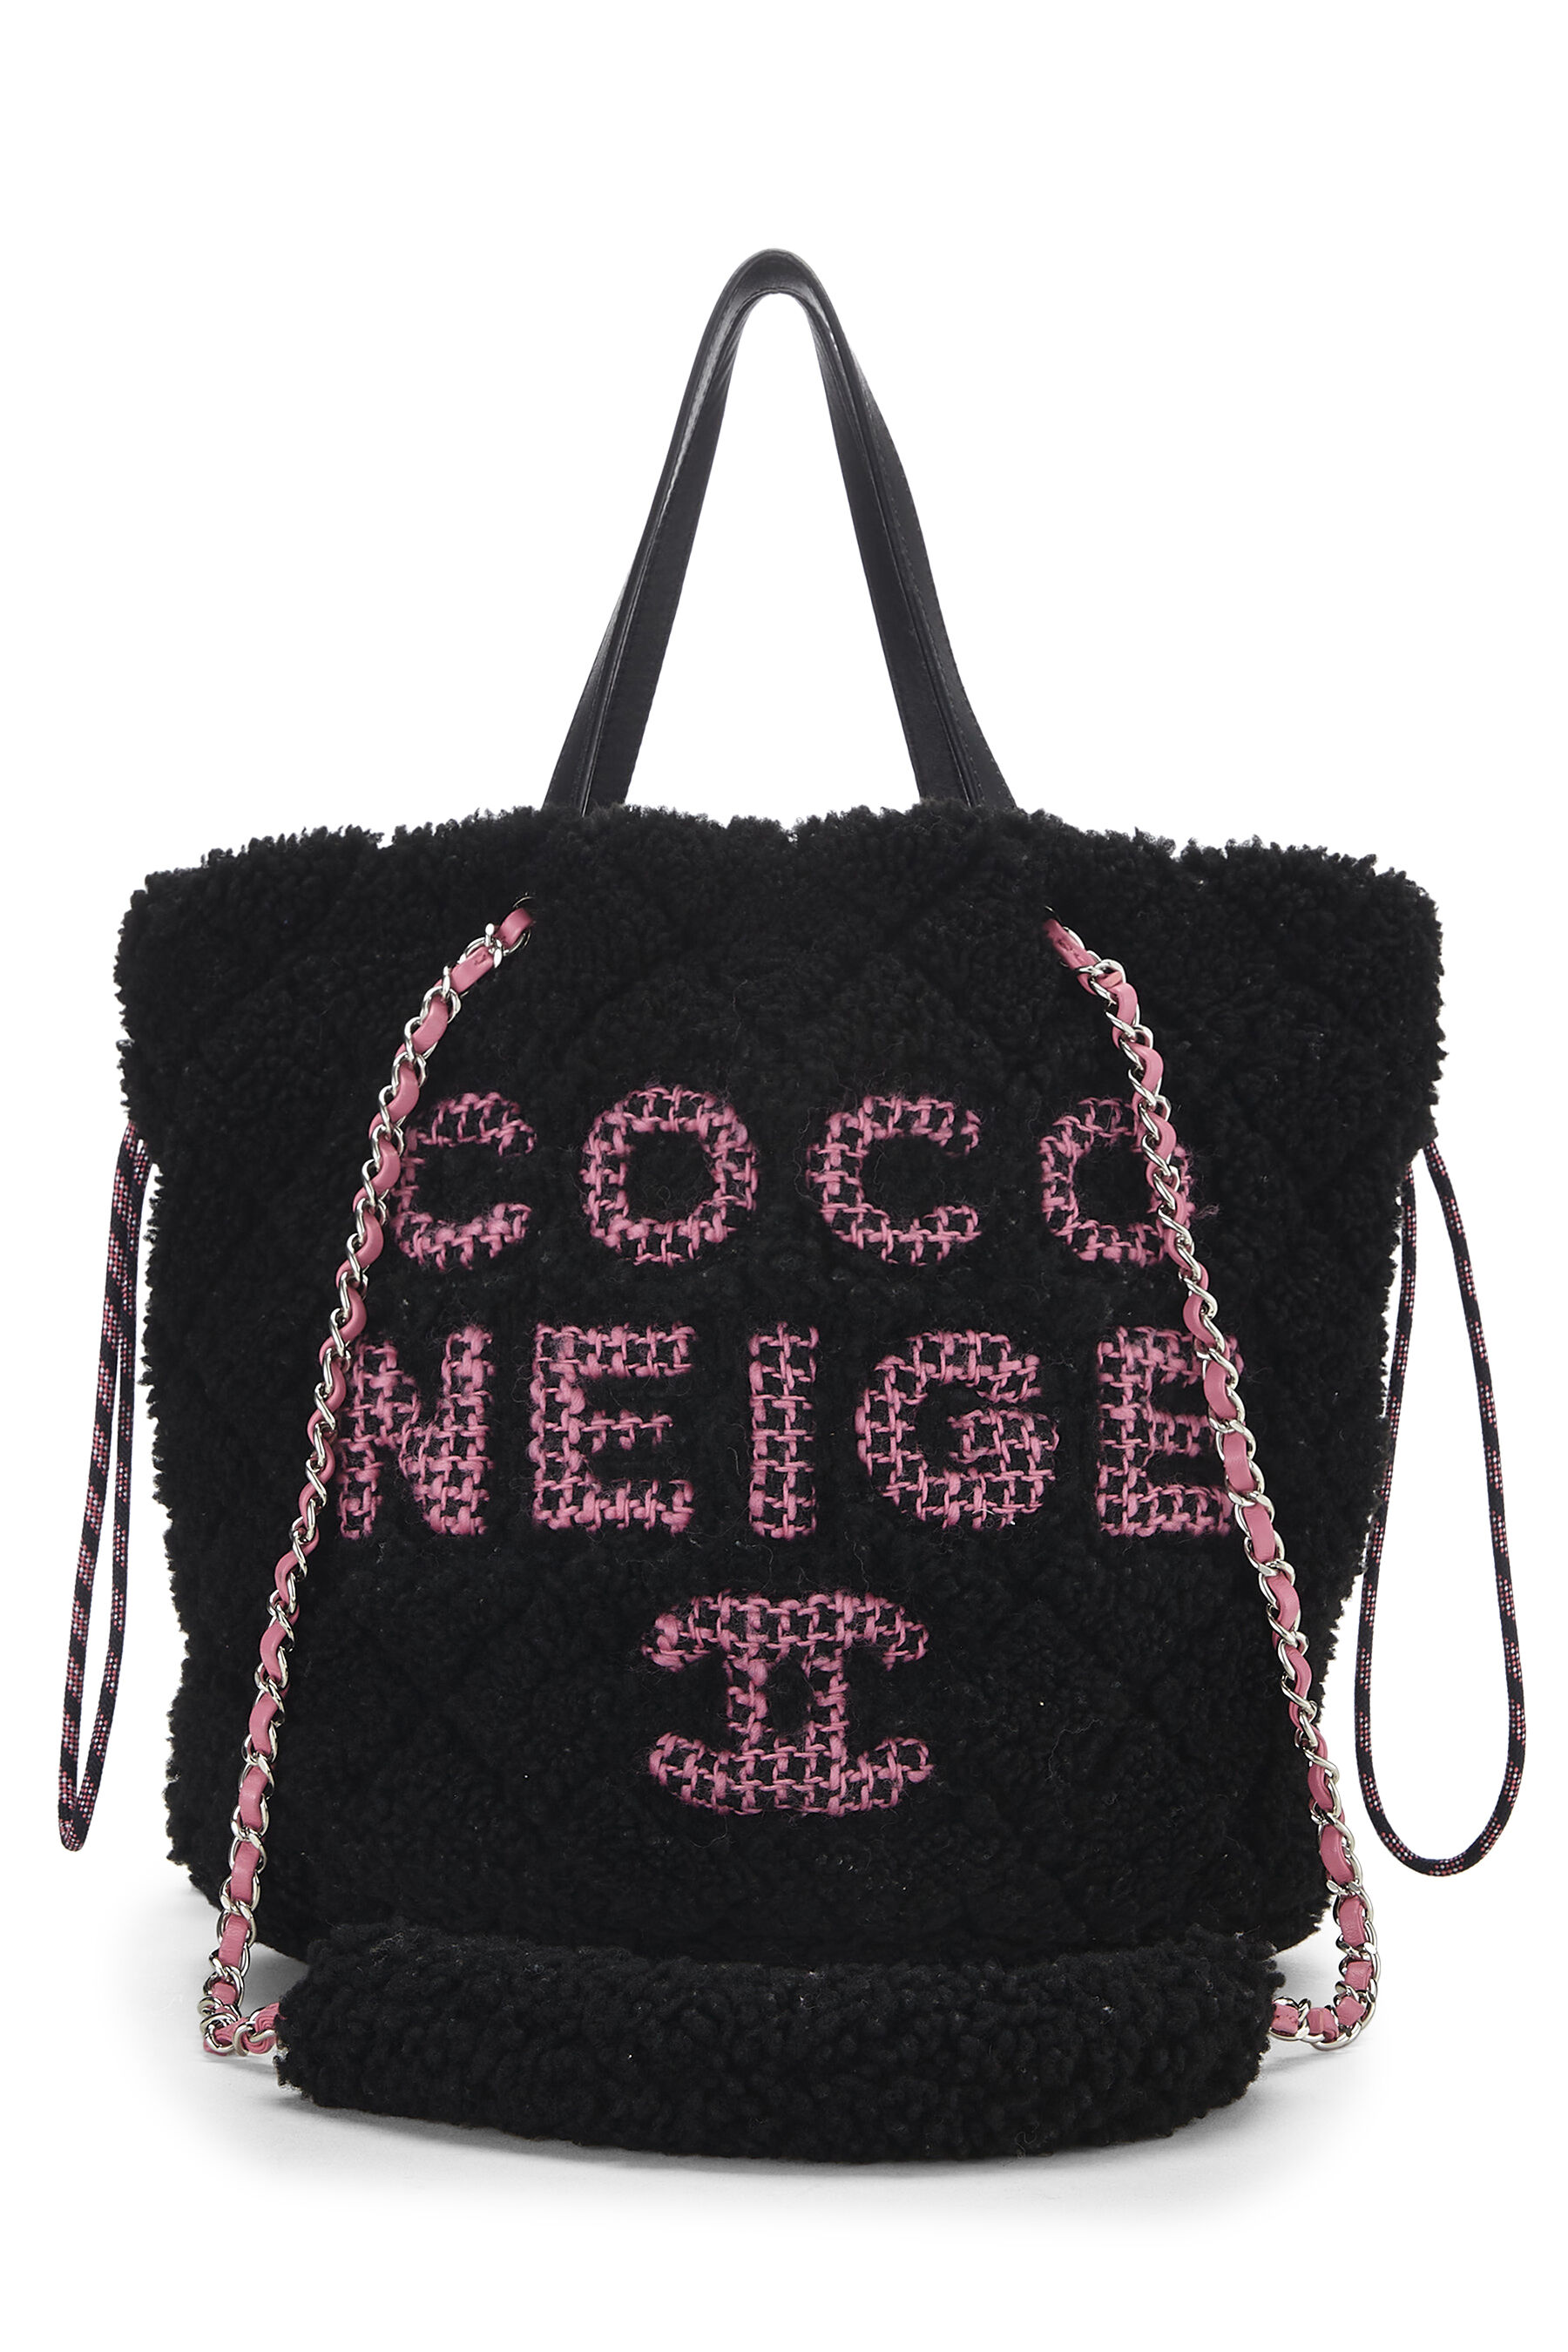 Chanel Black Shearling 'Coco Neige' Tote Q6B5173IKB000